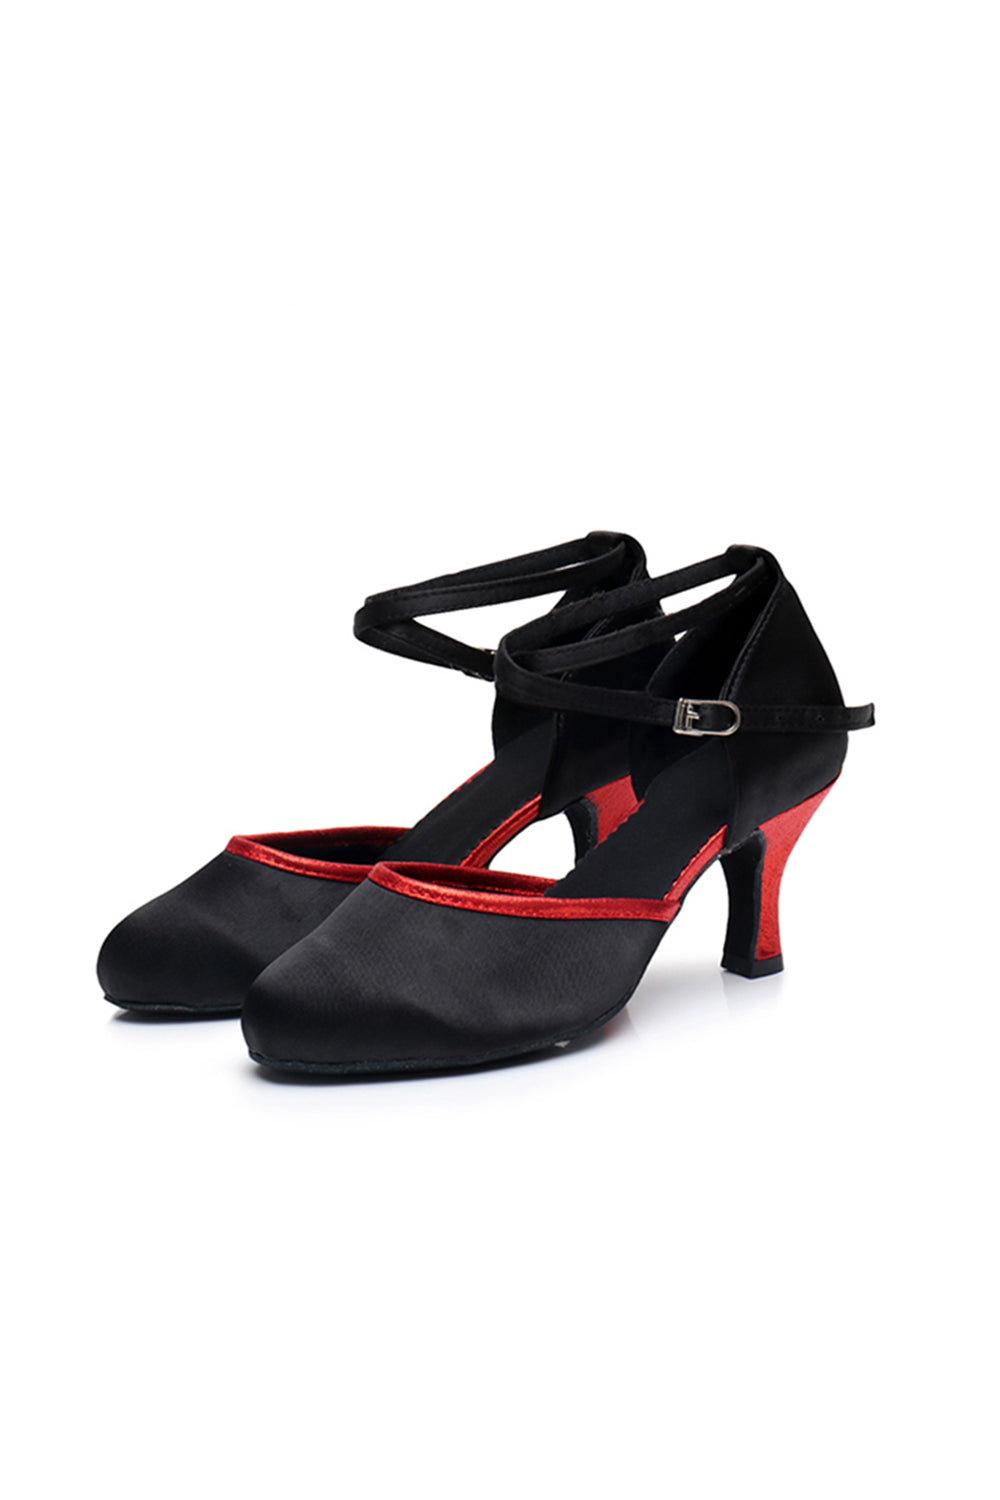 Femmes Chaussures des années 1920 T-Straps Noirs et Rouges Talons